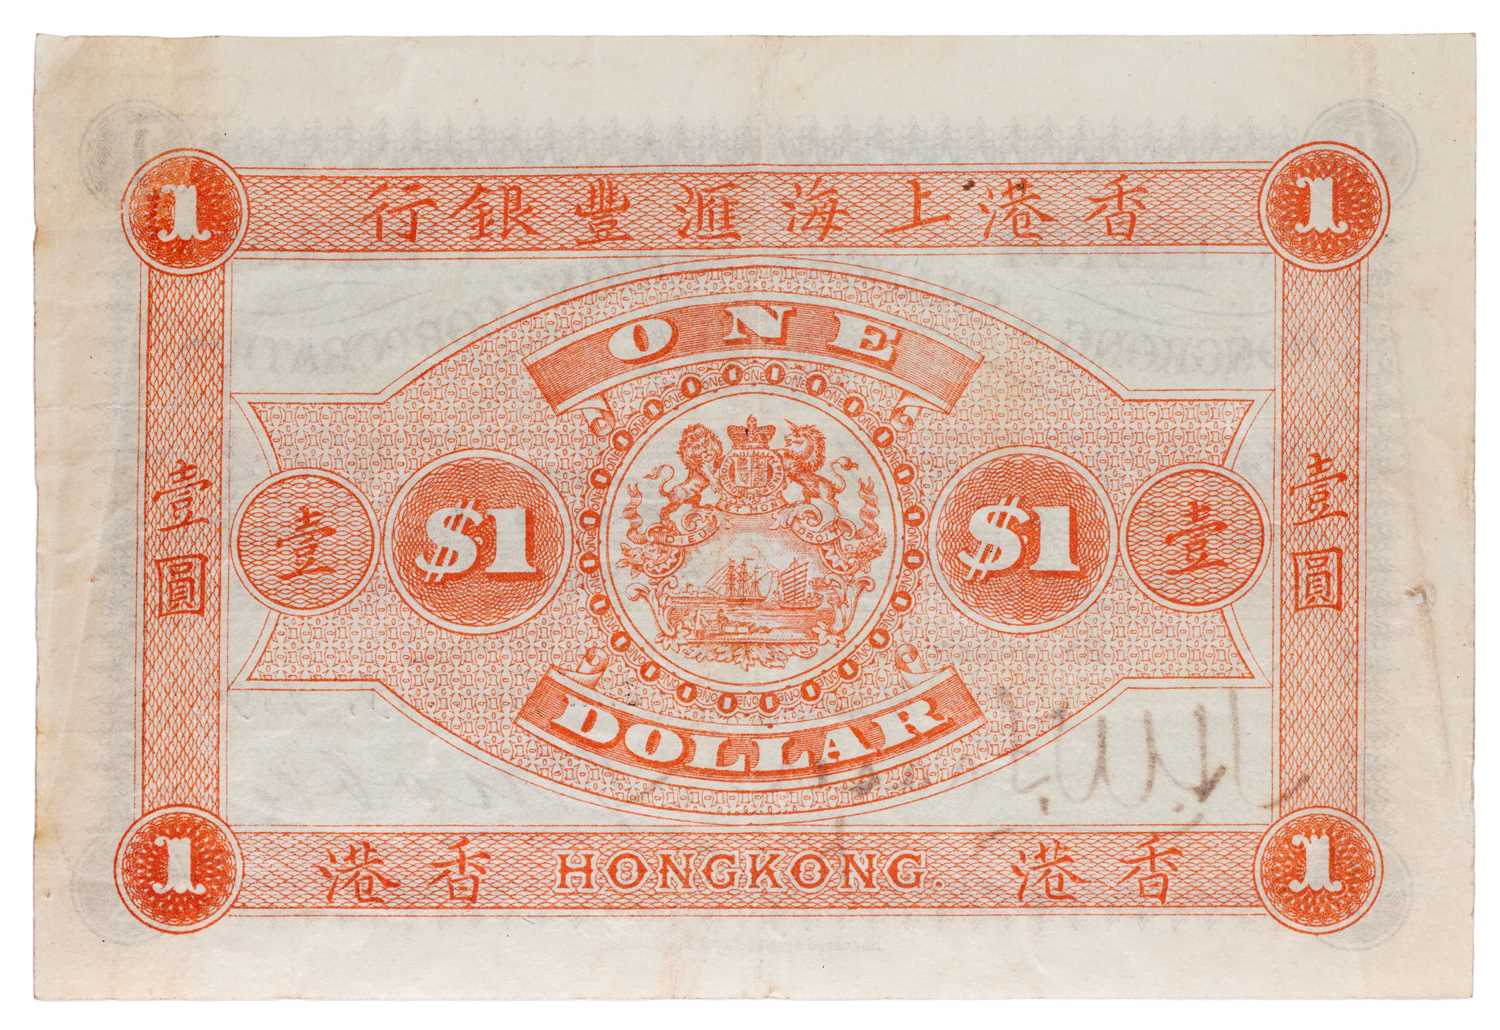 Hong Kong, Hong Kong and Shanghai Banking Corporation $1, 2nd January 1890, serial number 126104, - Image 2 of 2